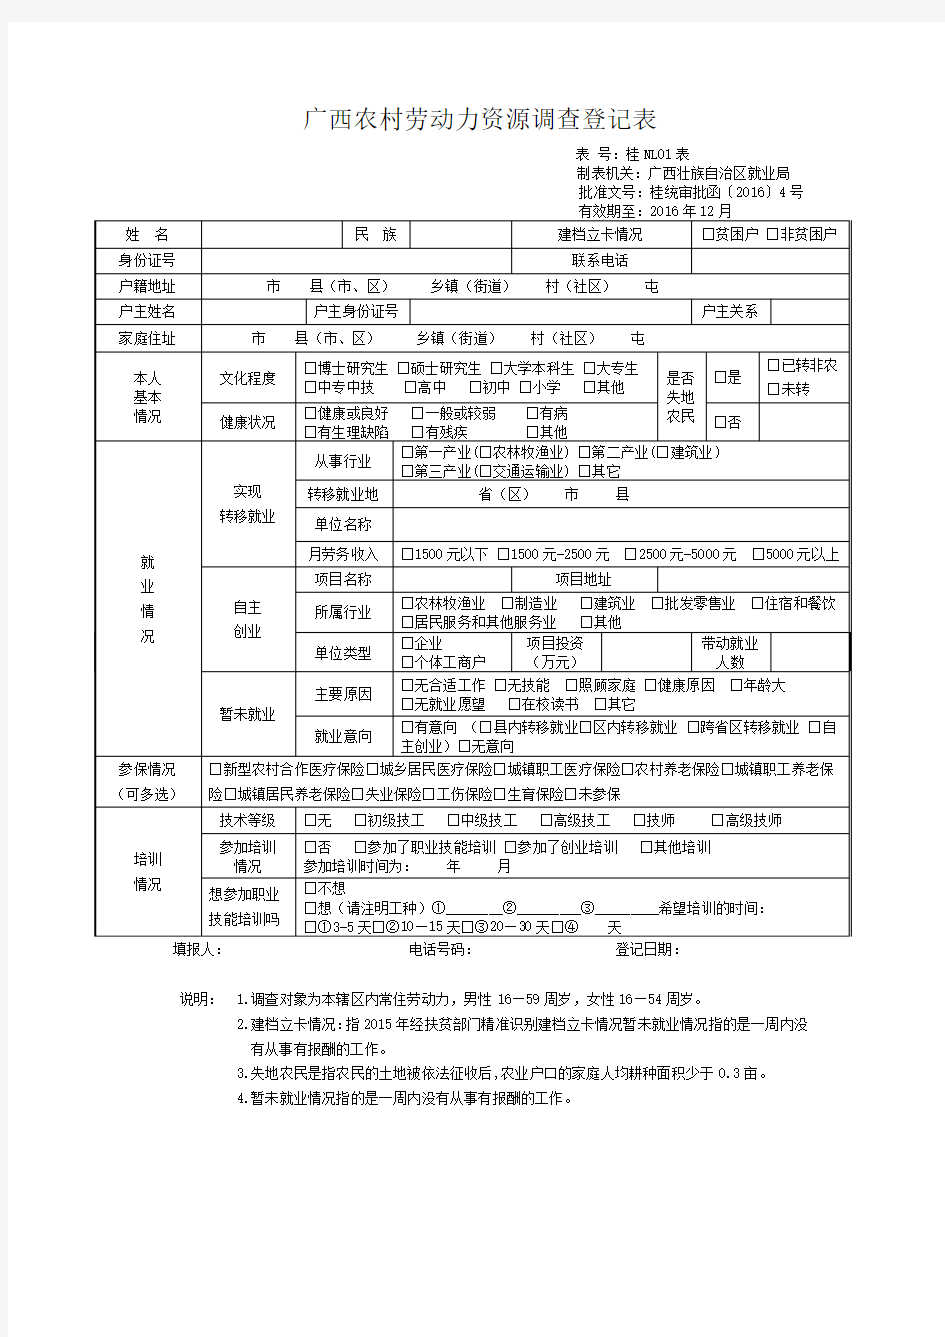 广西农村劳动力资源调查登记表